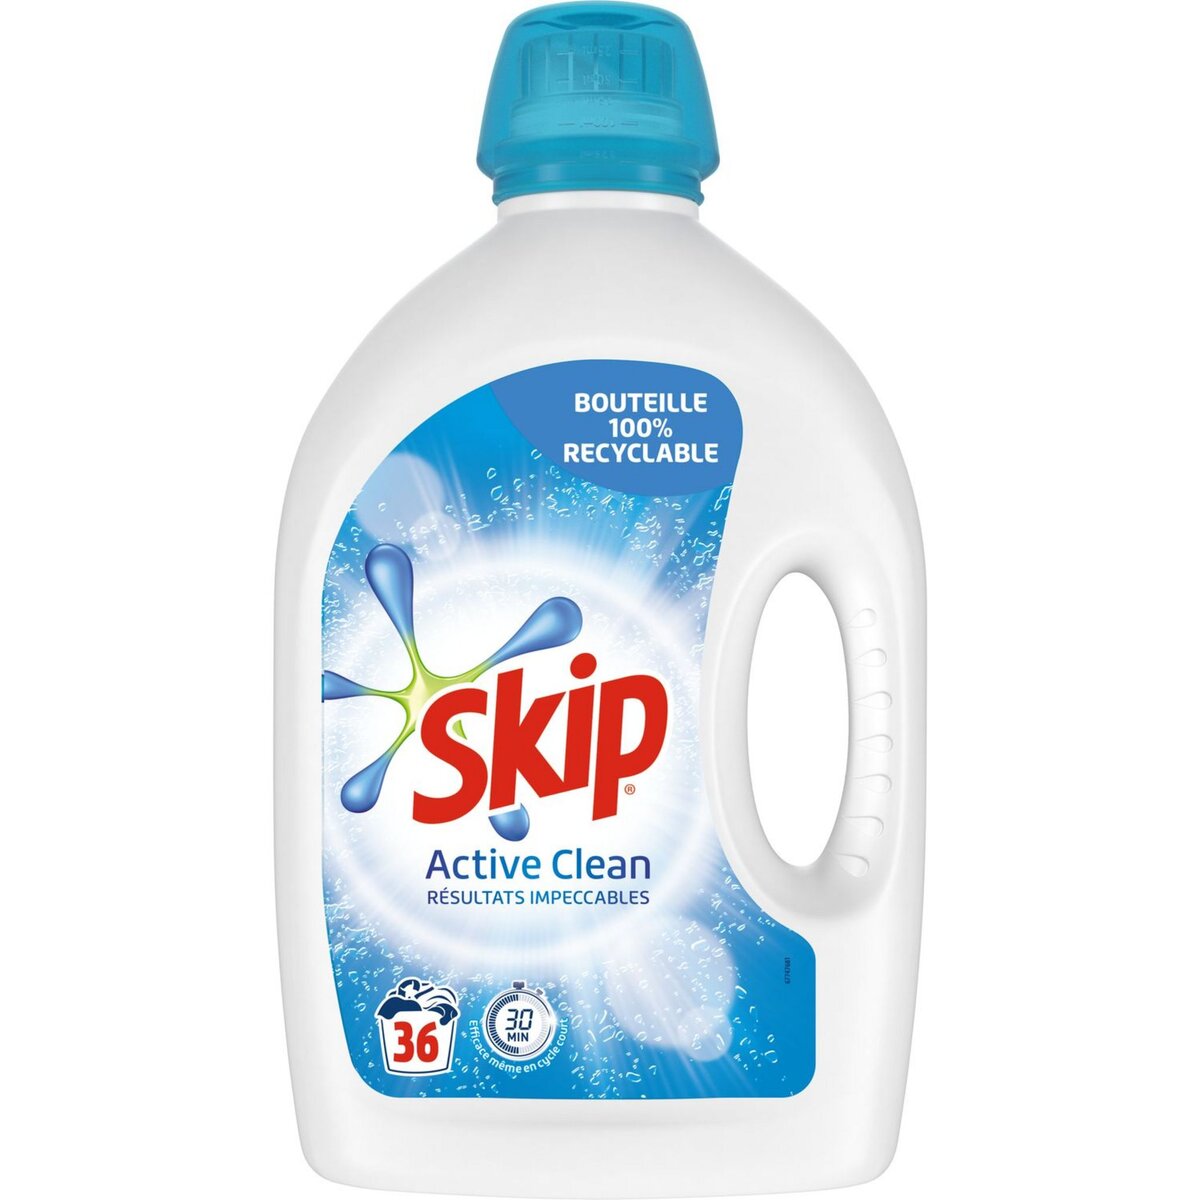 Pourquoi si peu de lessive liquide dans ce bidon Skip ?